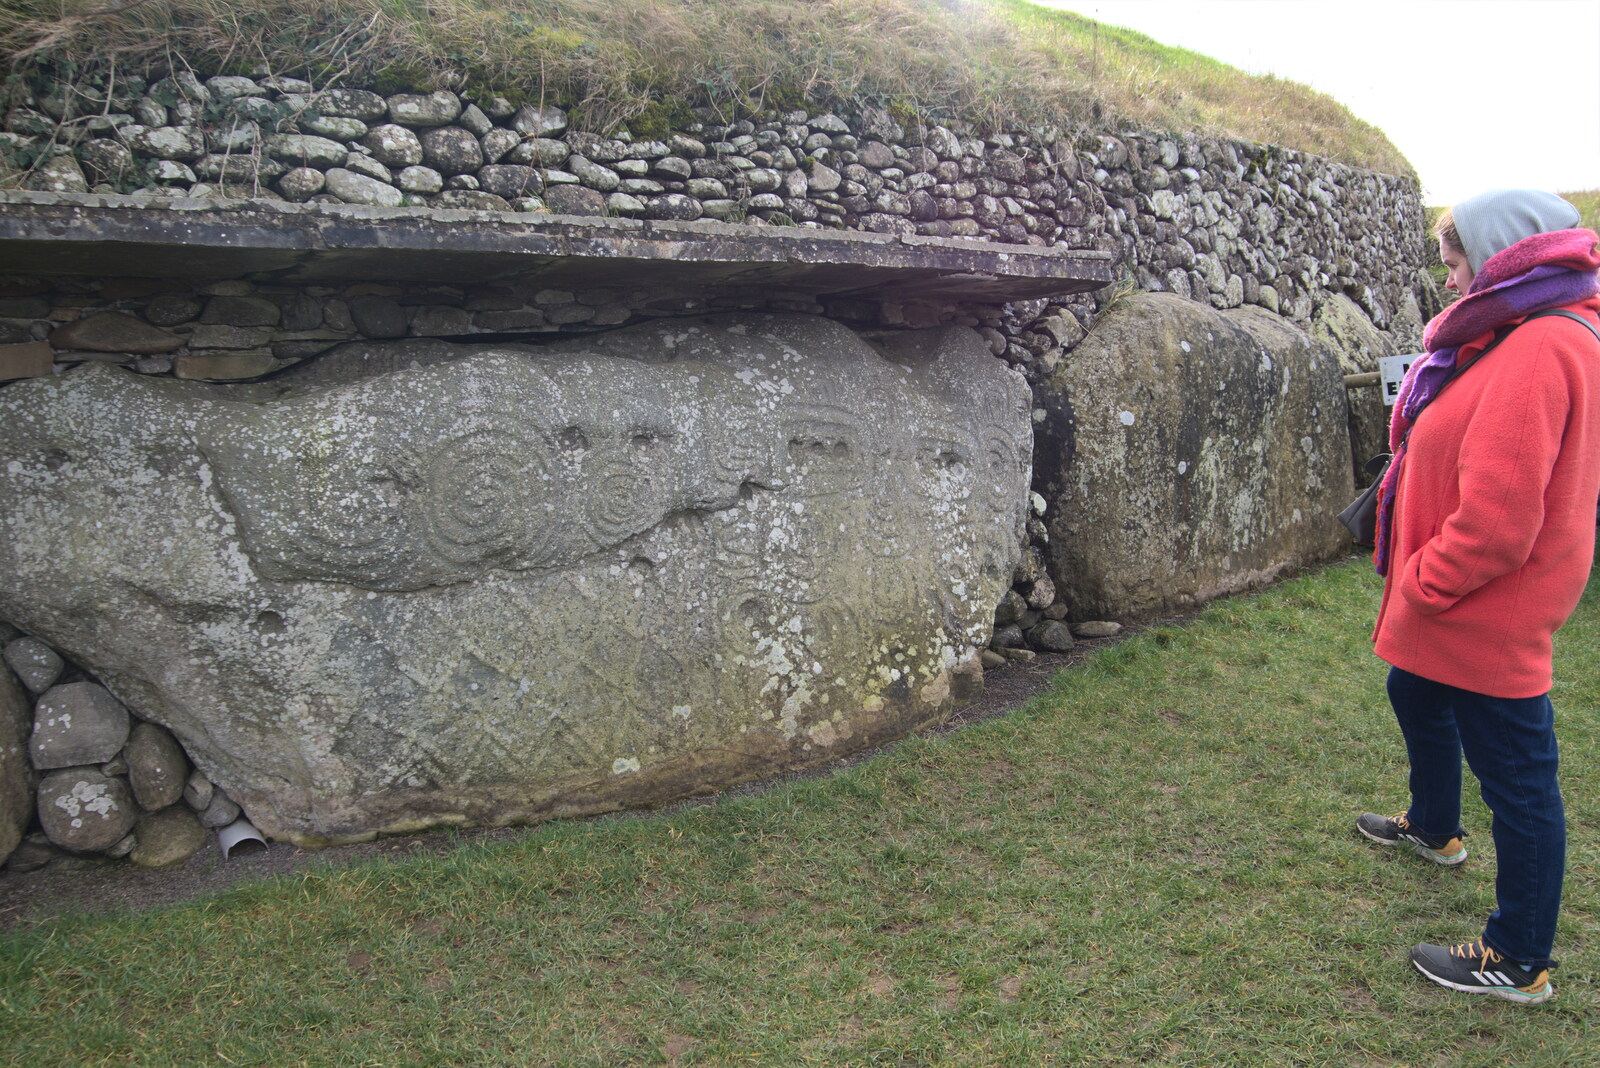 Blackrock North and Newgrange, County Louth, Ireland - 16th February 2023: Isobel surveys some neolithic art